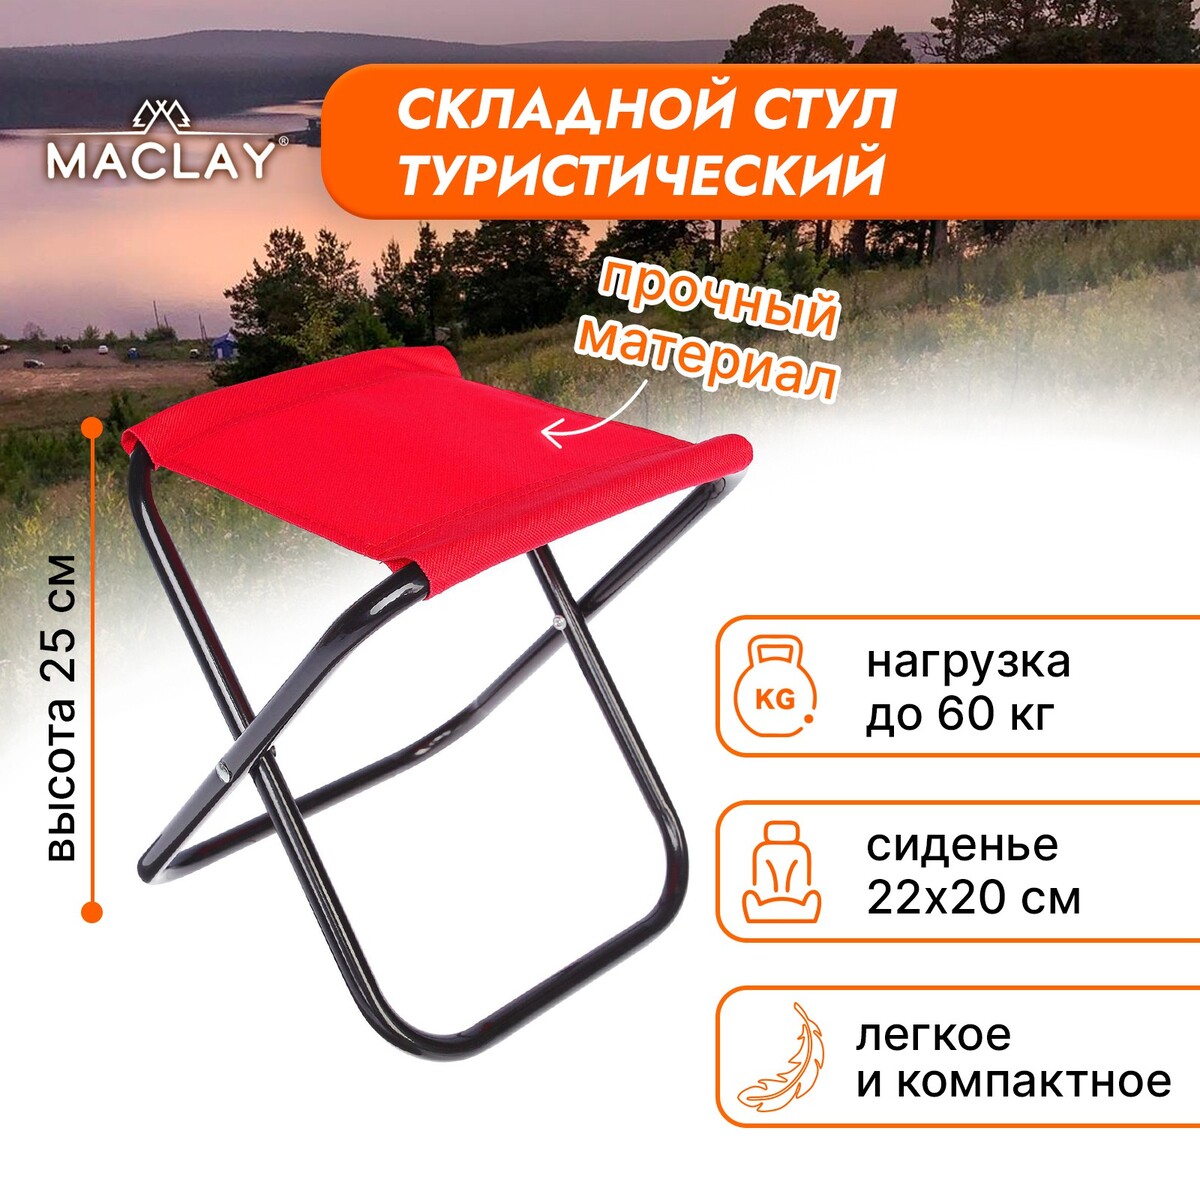 Стул туристический maclay, складной, р. 22х20х25 см, цвет красный стул премиум 5 складной 80 50 76см псп5